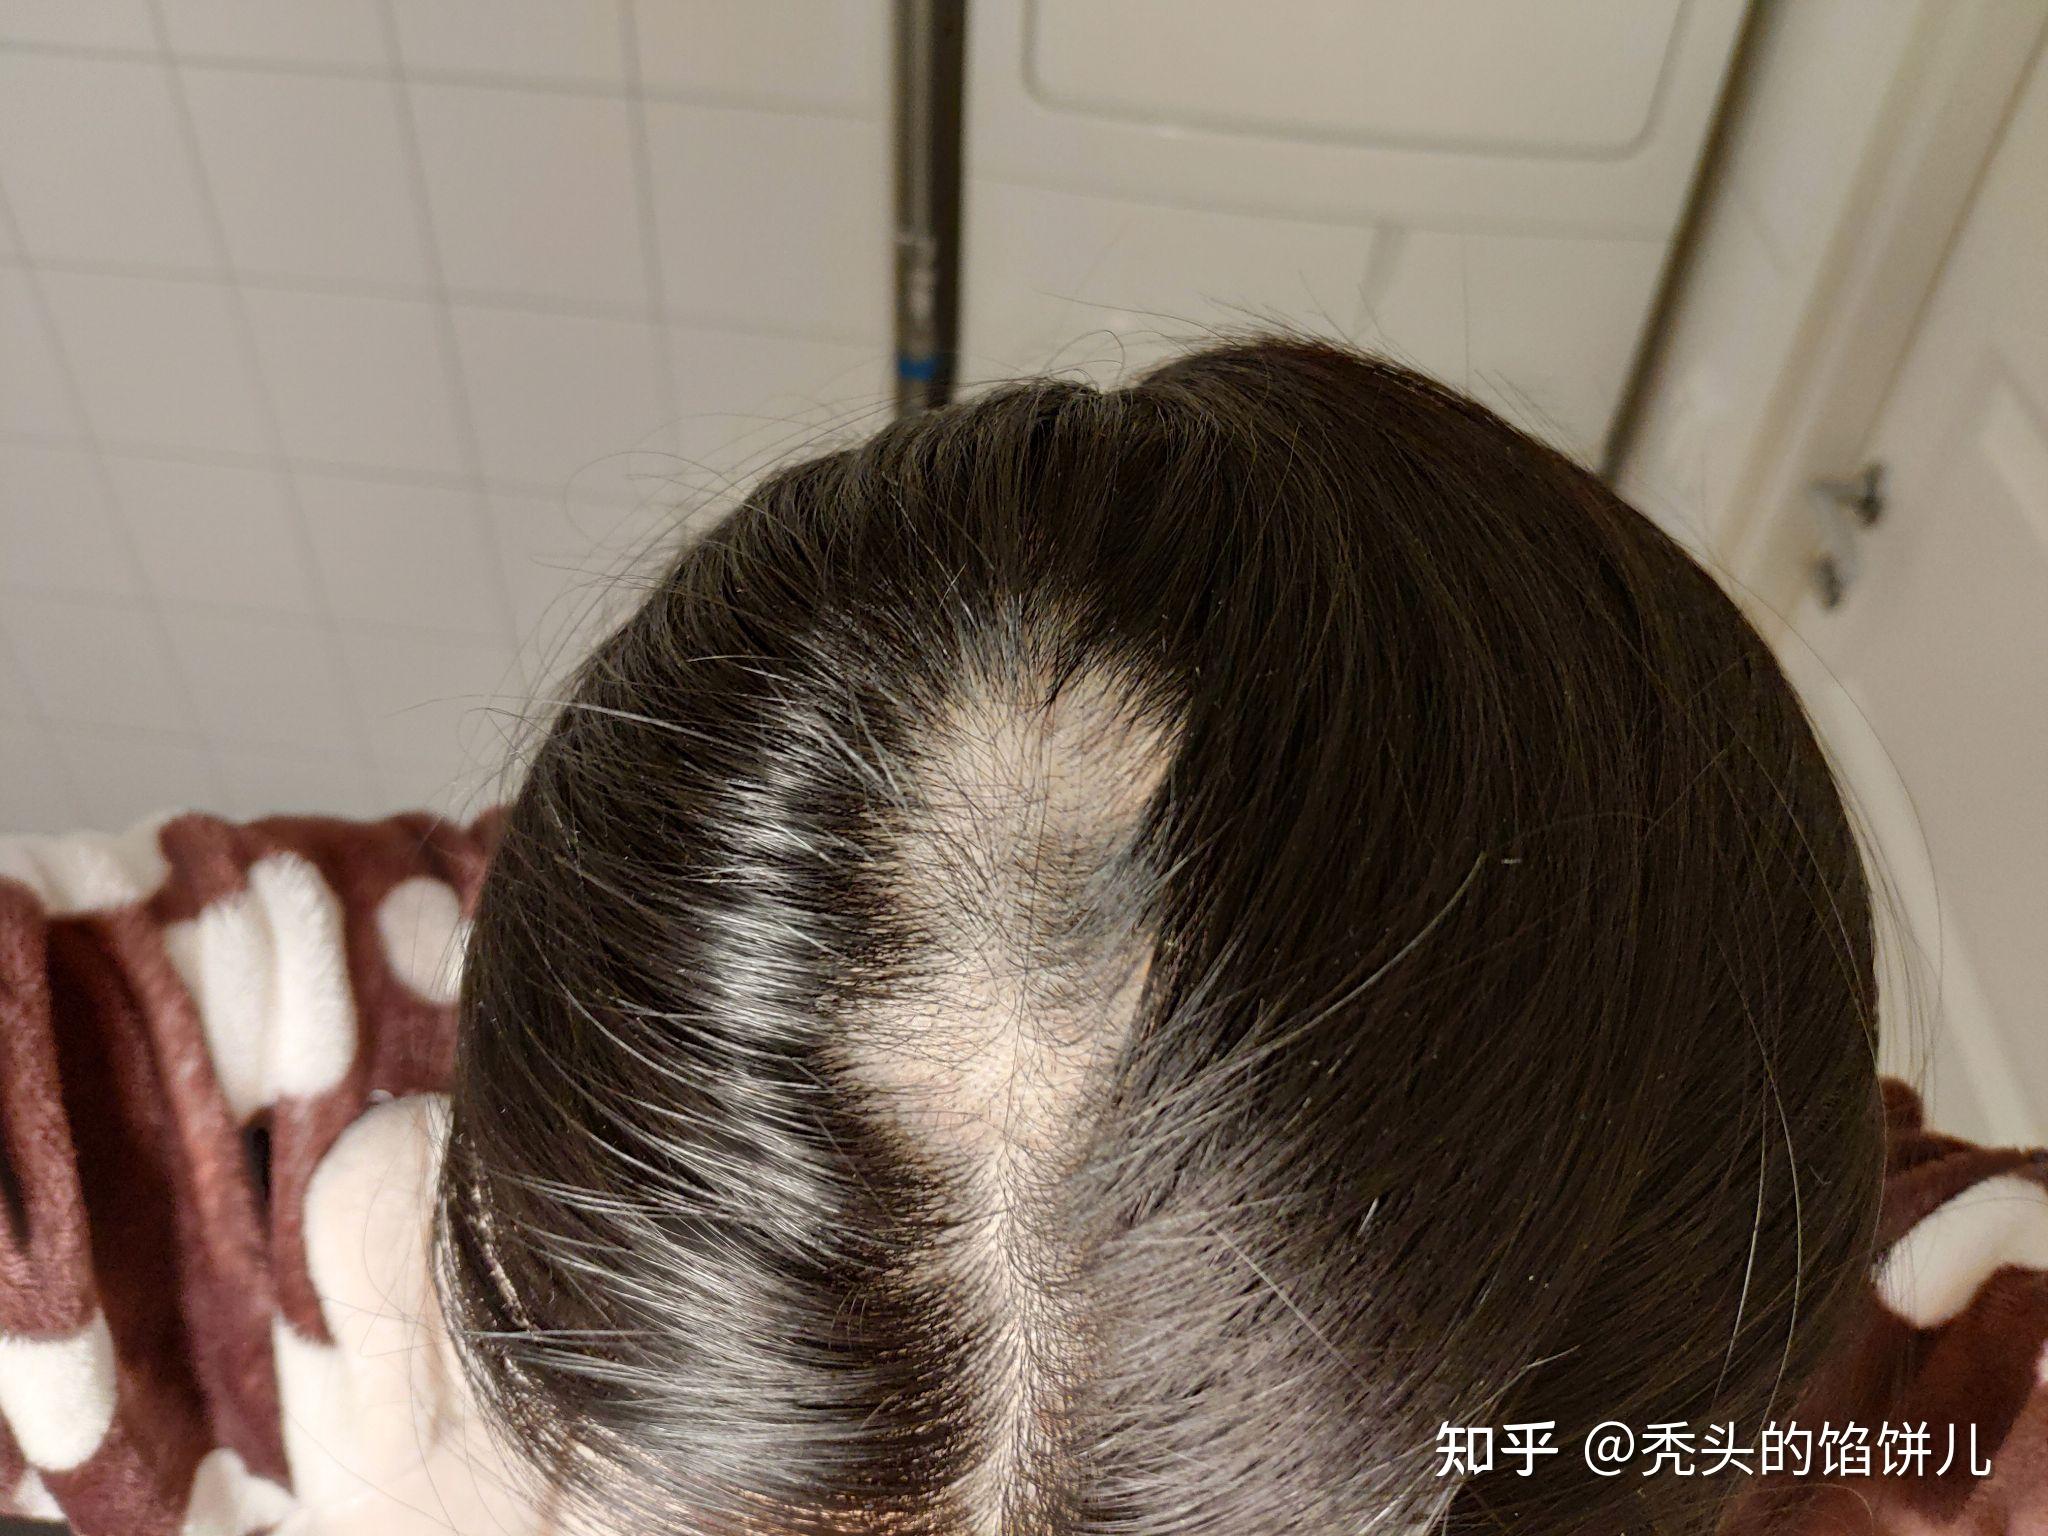 记录雄激素脱发在广州的治疗经历--广东省皮肤病医院(南方医科大学皮肤病医院) - 知乎